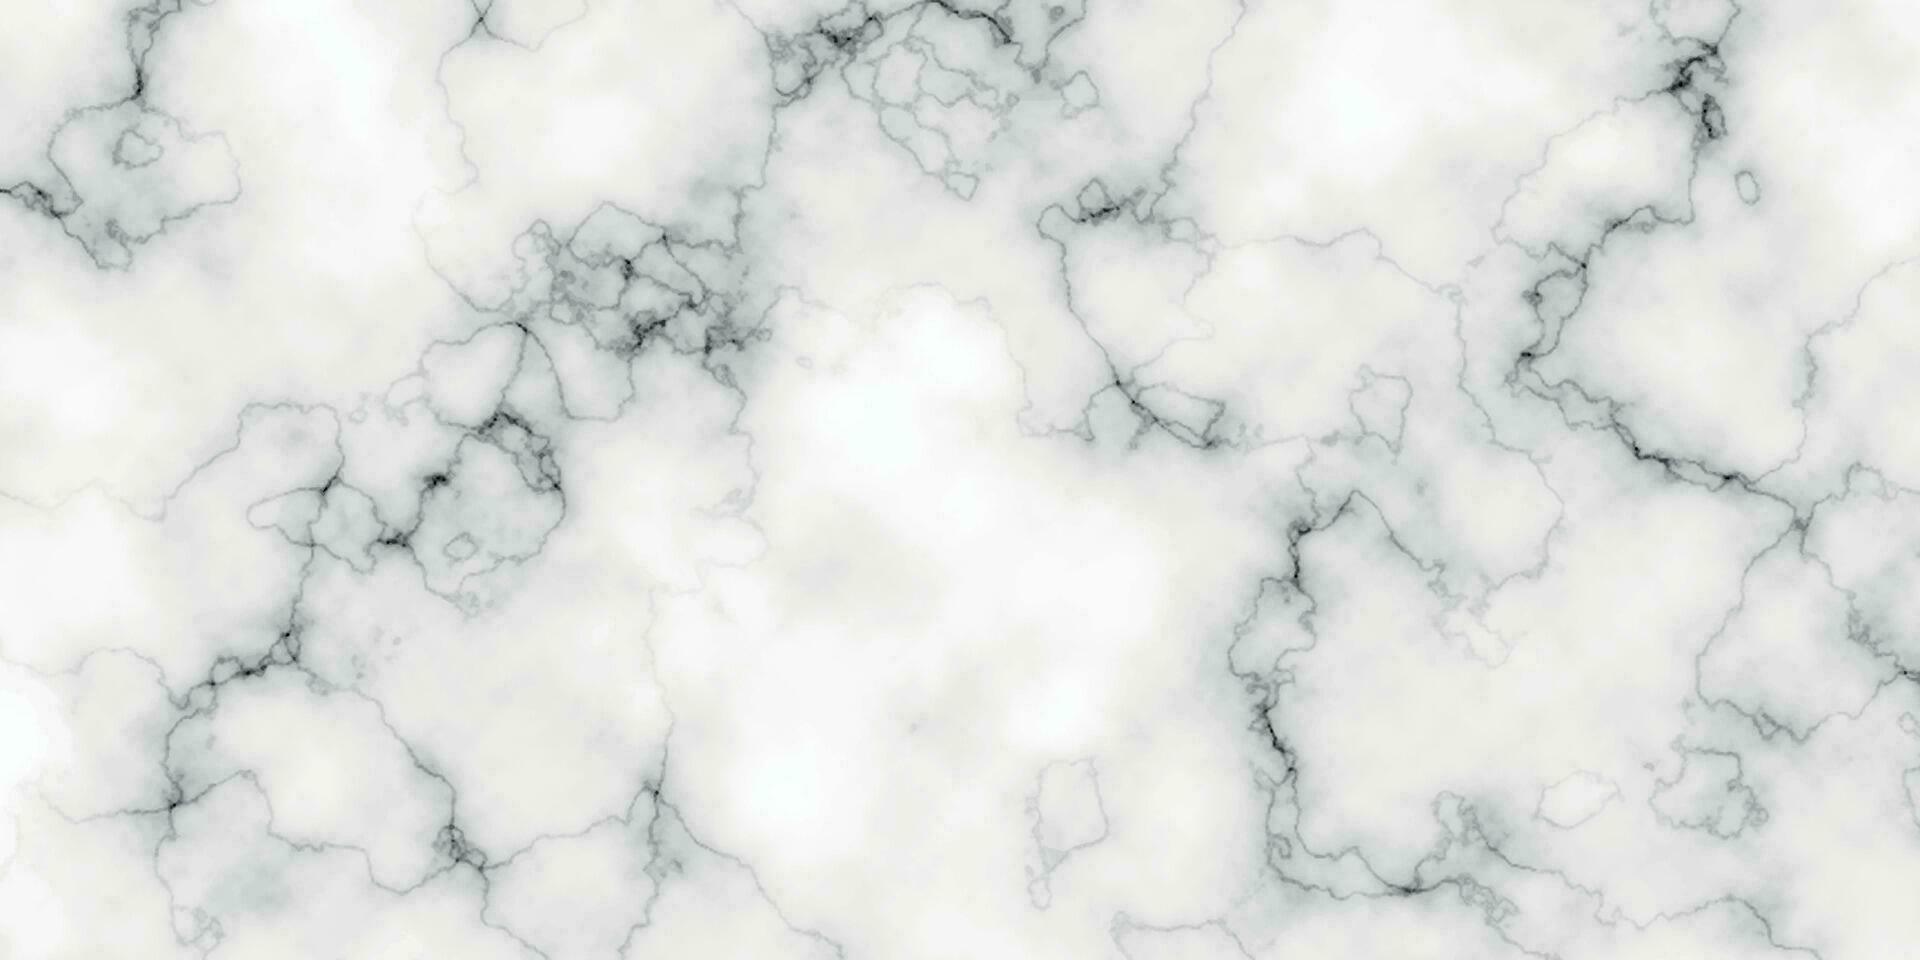 wit marmeren textuur. wit carrara marmeren steen textuur. vector